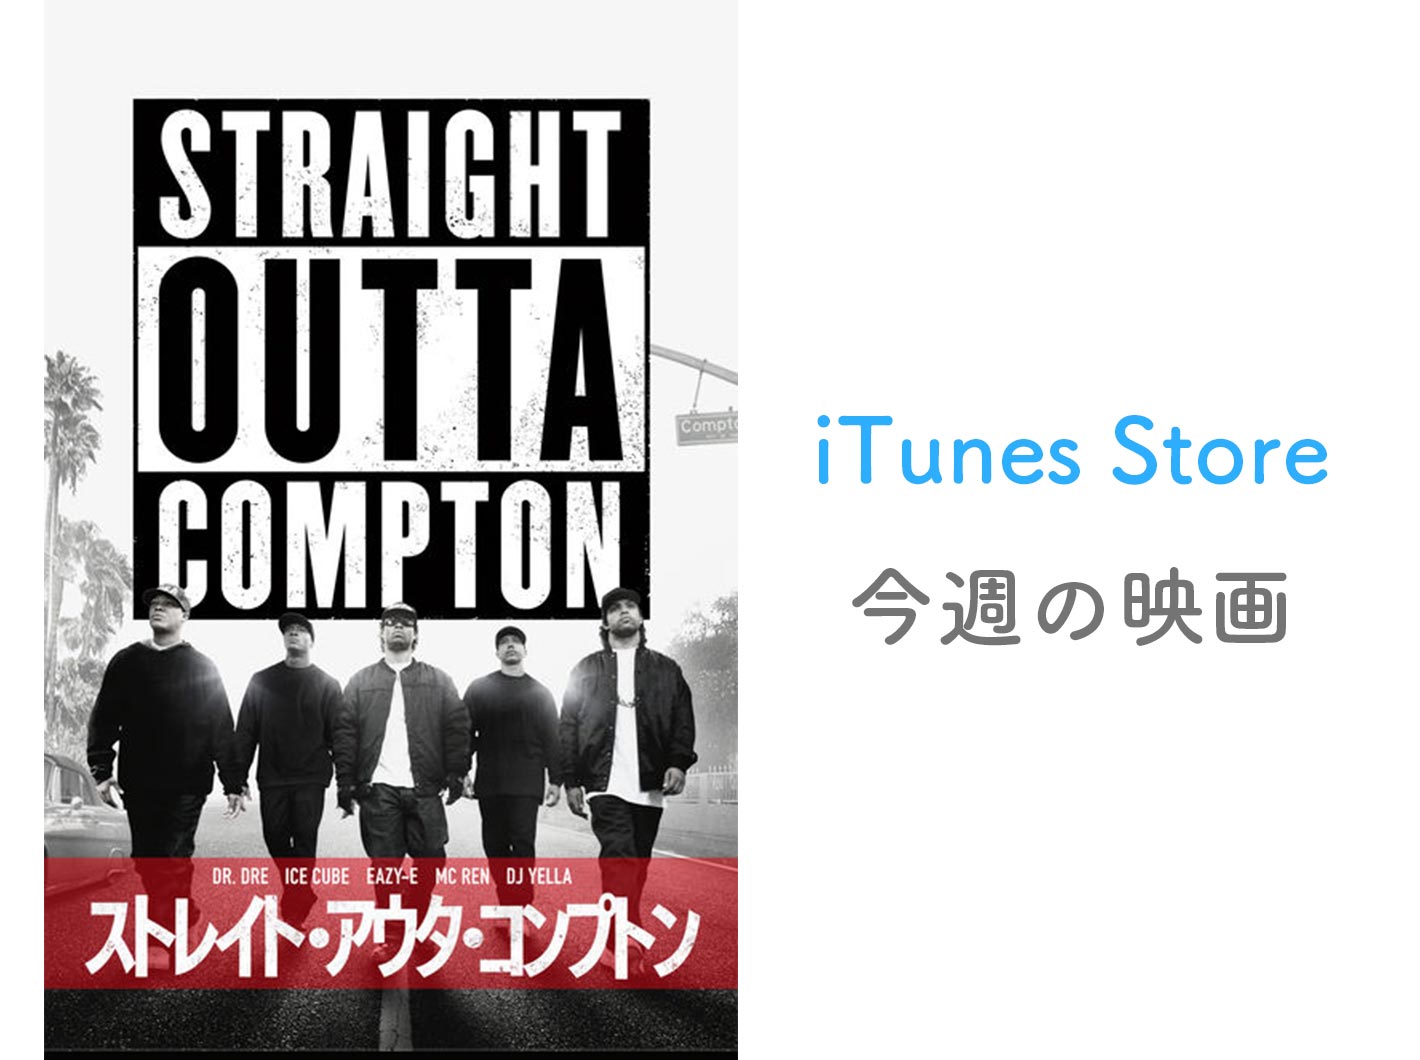 レンタル100円 Itunes Store 今週の映画 として ストレイト アウタ コンプトン をピックアップ